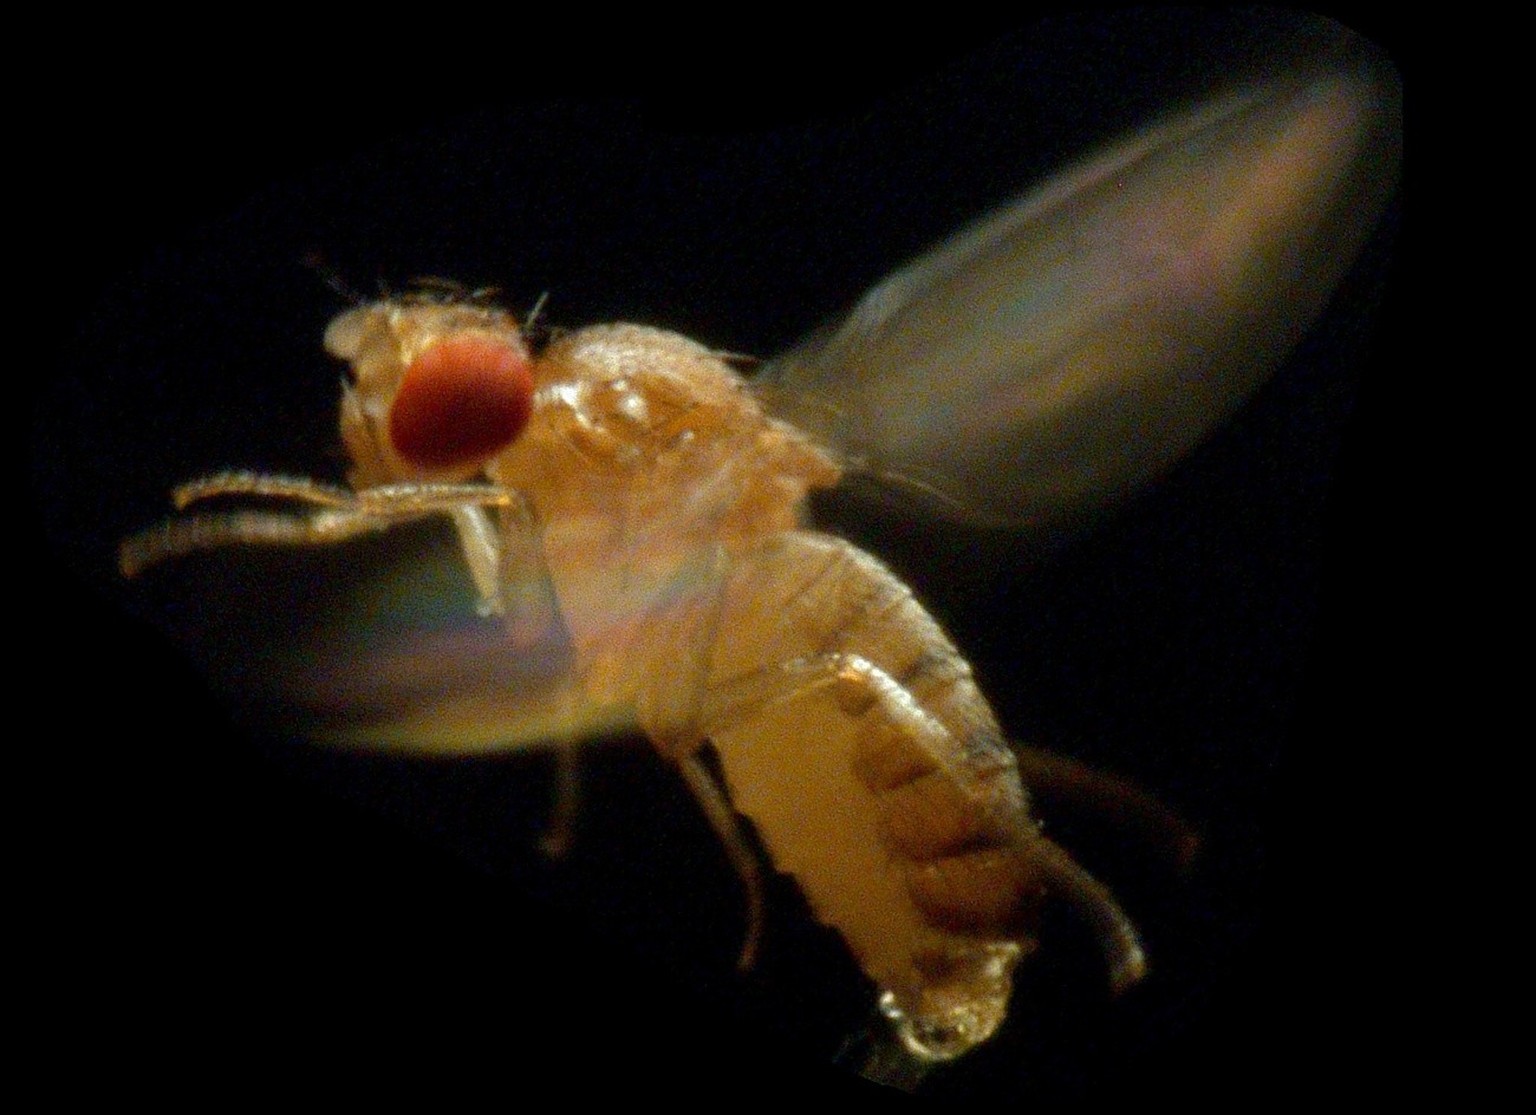 SPERRFRIST BIS DONNERSTAG, 17. APRIL 2003, 20 UHR
HANDOUT---Eine Fruchtfliege Drosophila melanogaster, aufgenommen im Maerz 2003. Der Forscher Steven Fry vom Institut fuer Neuroinformatik der Universi ...